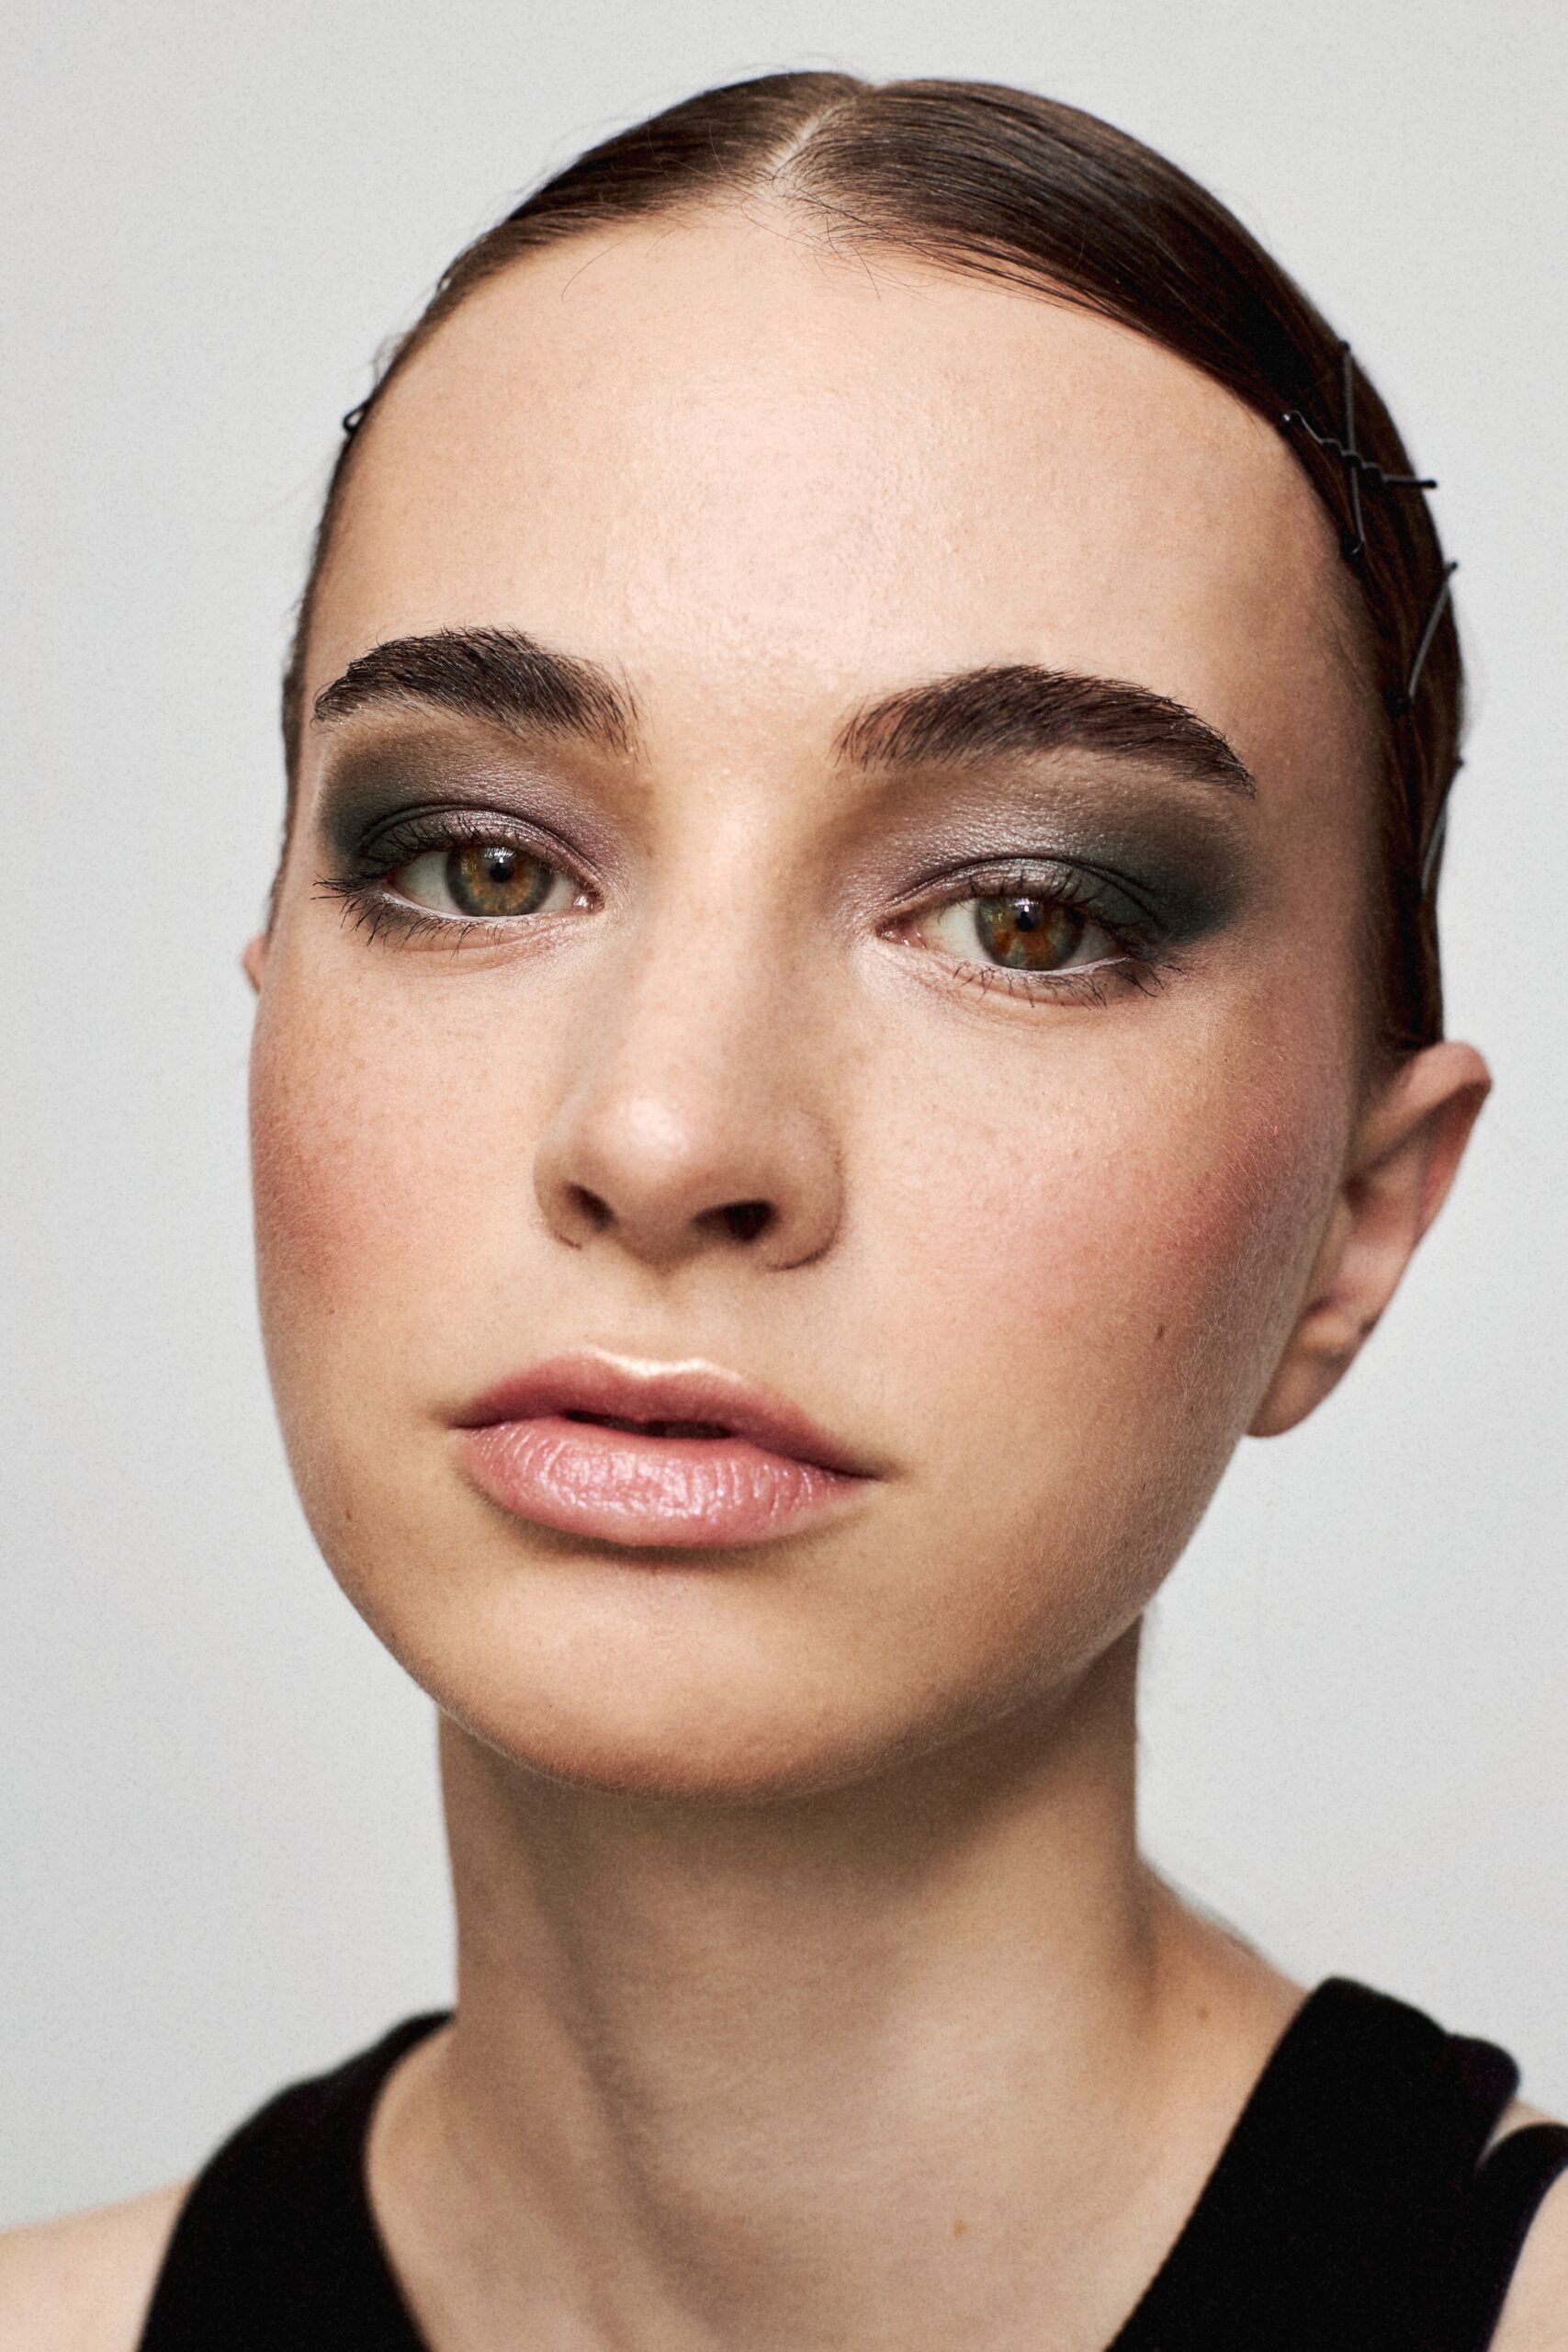 Model mit dunklerem Make up von Make up Artist Patrycja Zielinska